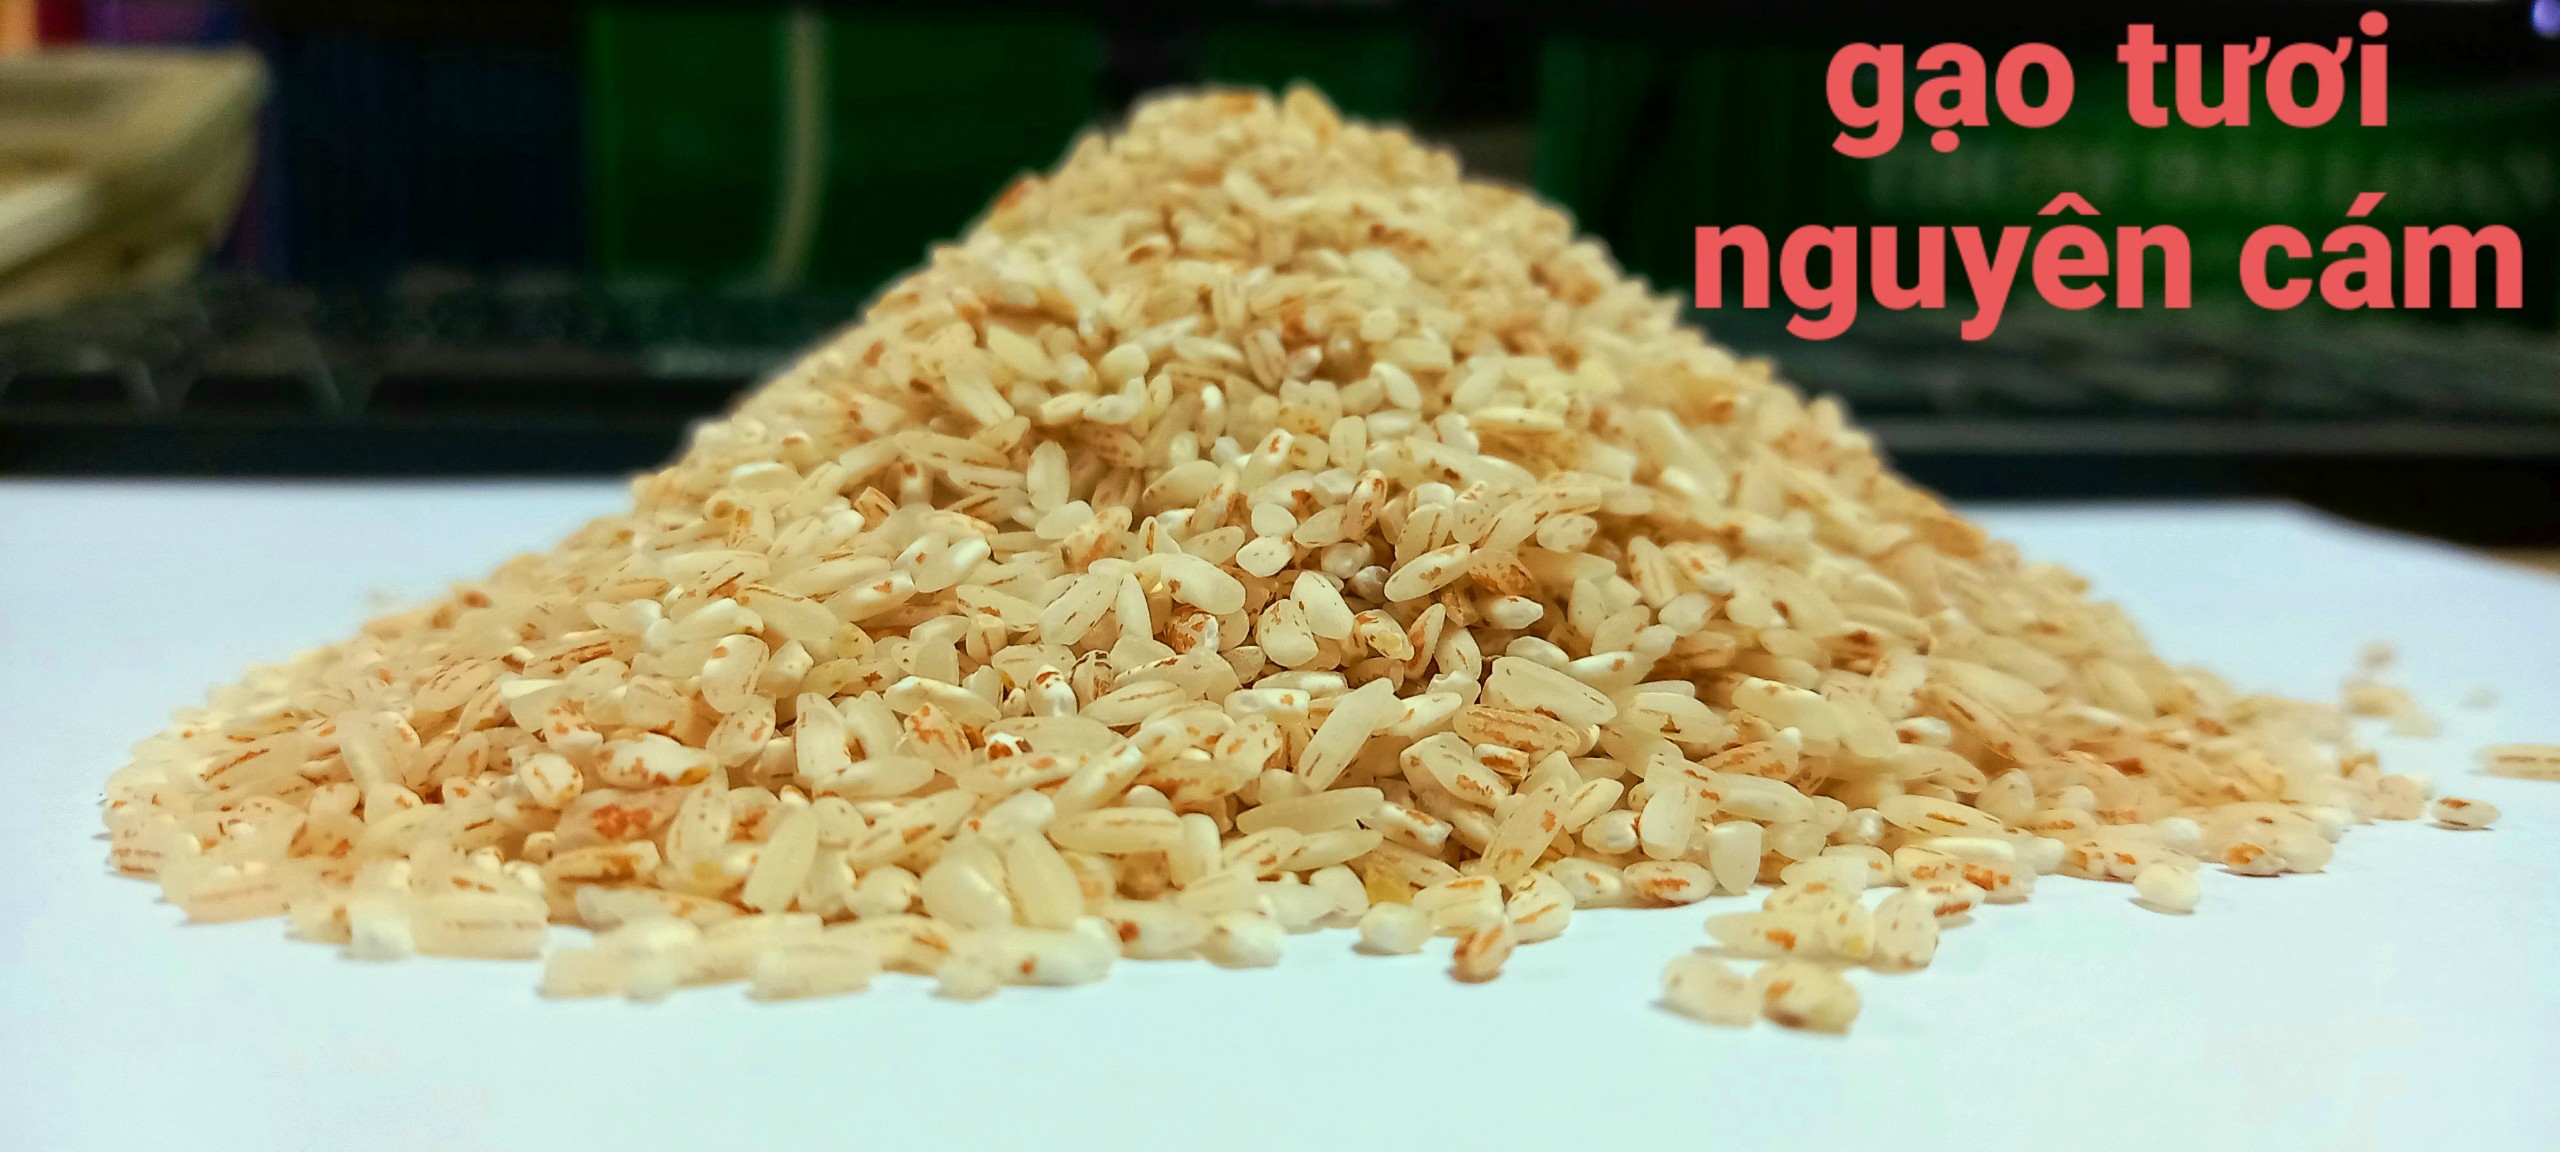 Hình ảnh Gạo Hữu Cơ Hồng Ân 2kg - gạo tươi nguyên cám, nhiều dinh dưỡng tốt cho sức khỏe